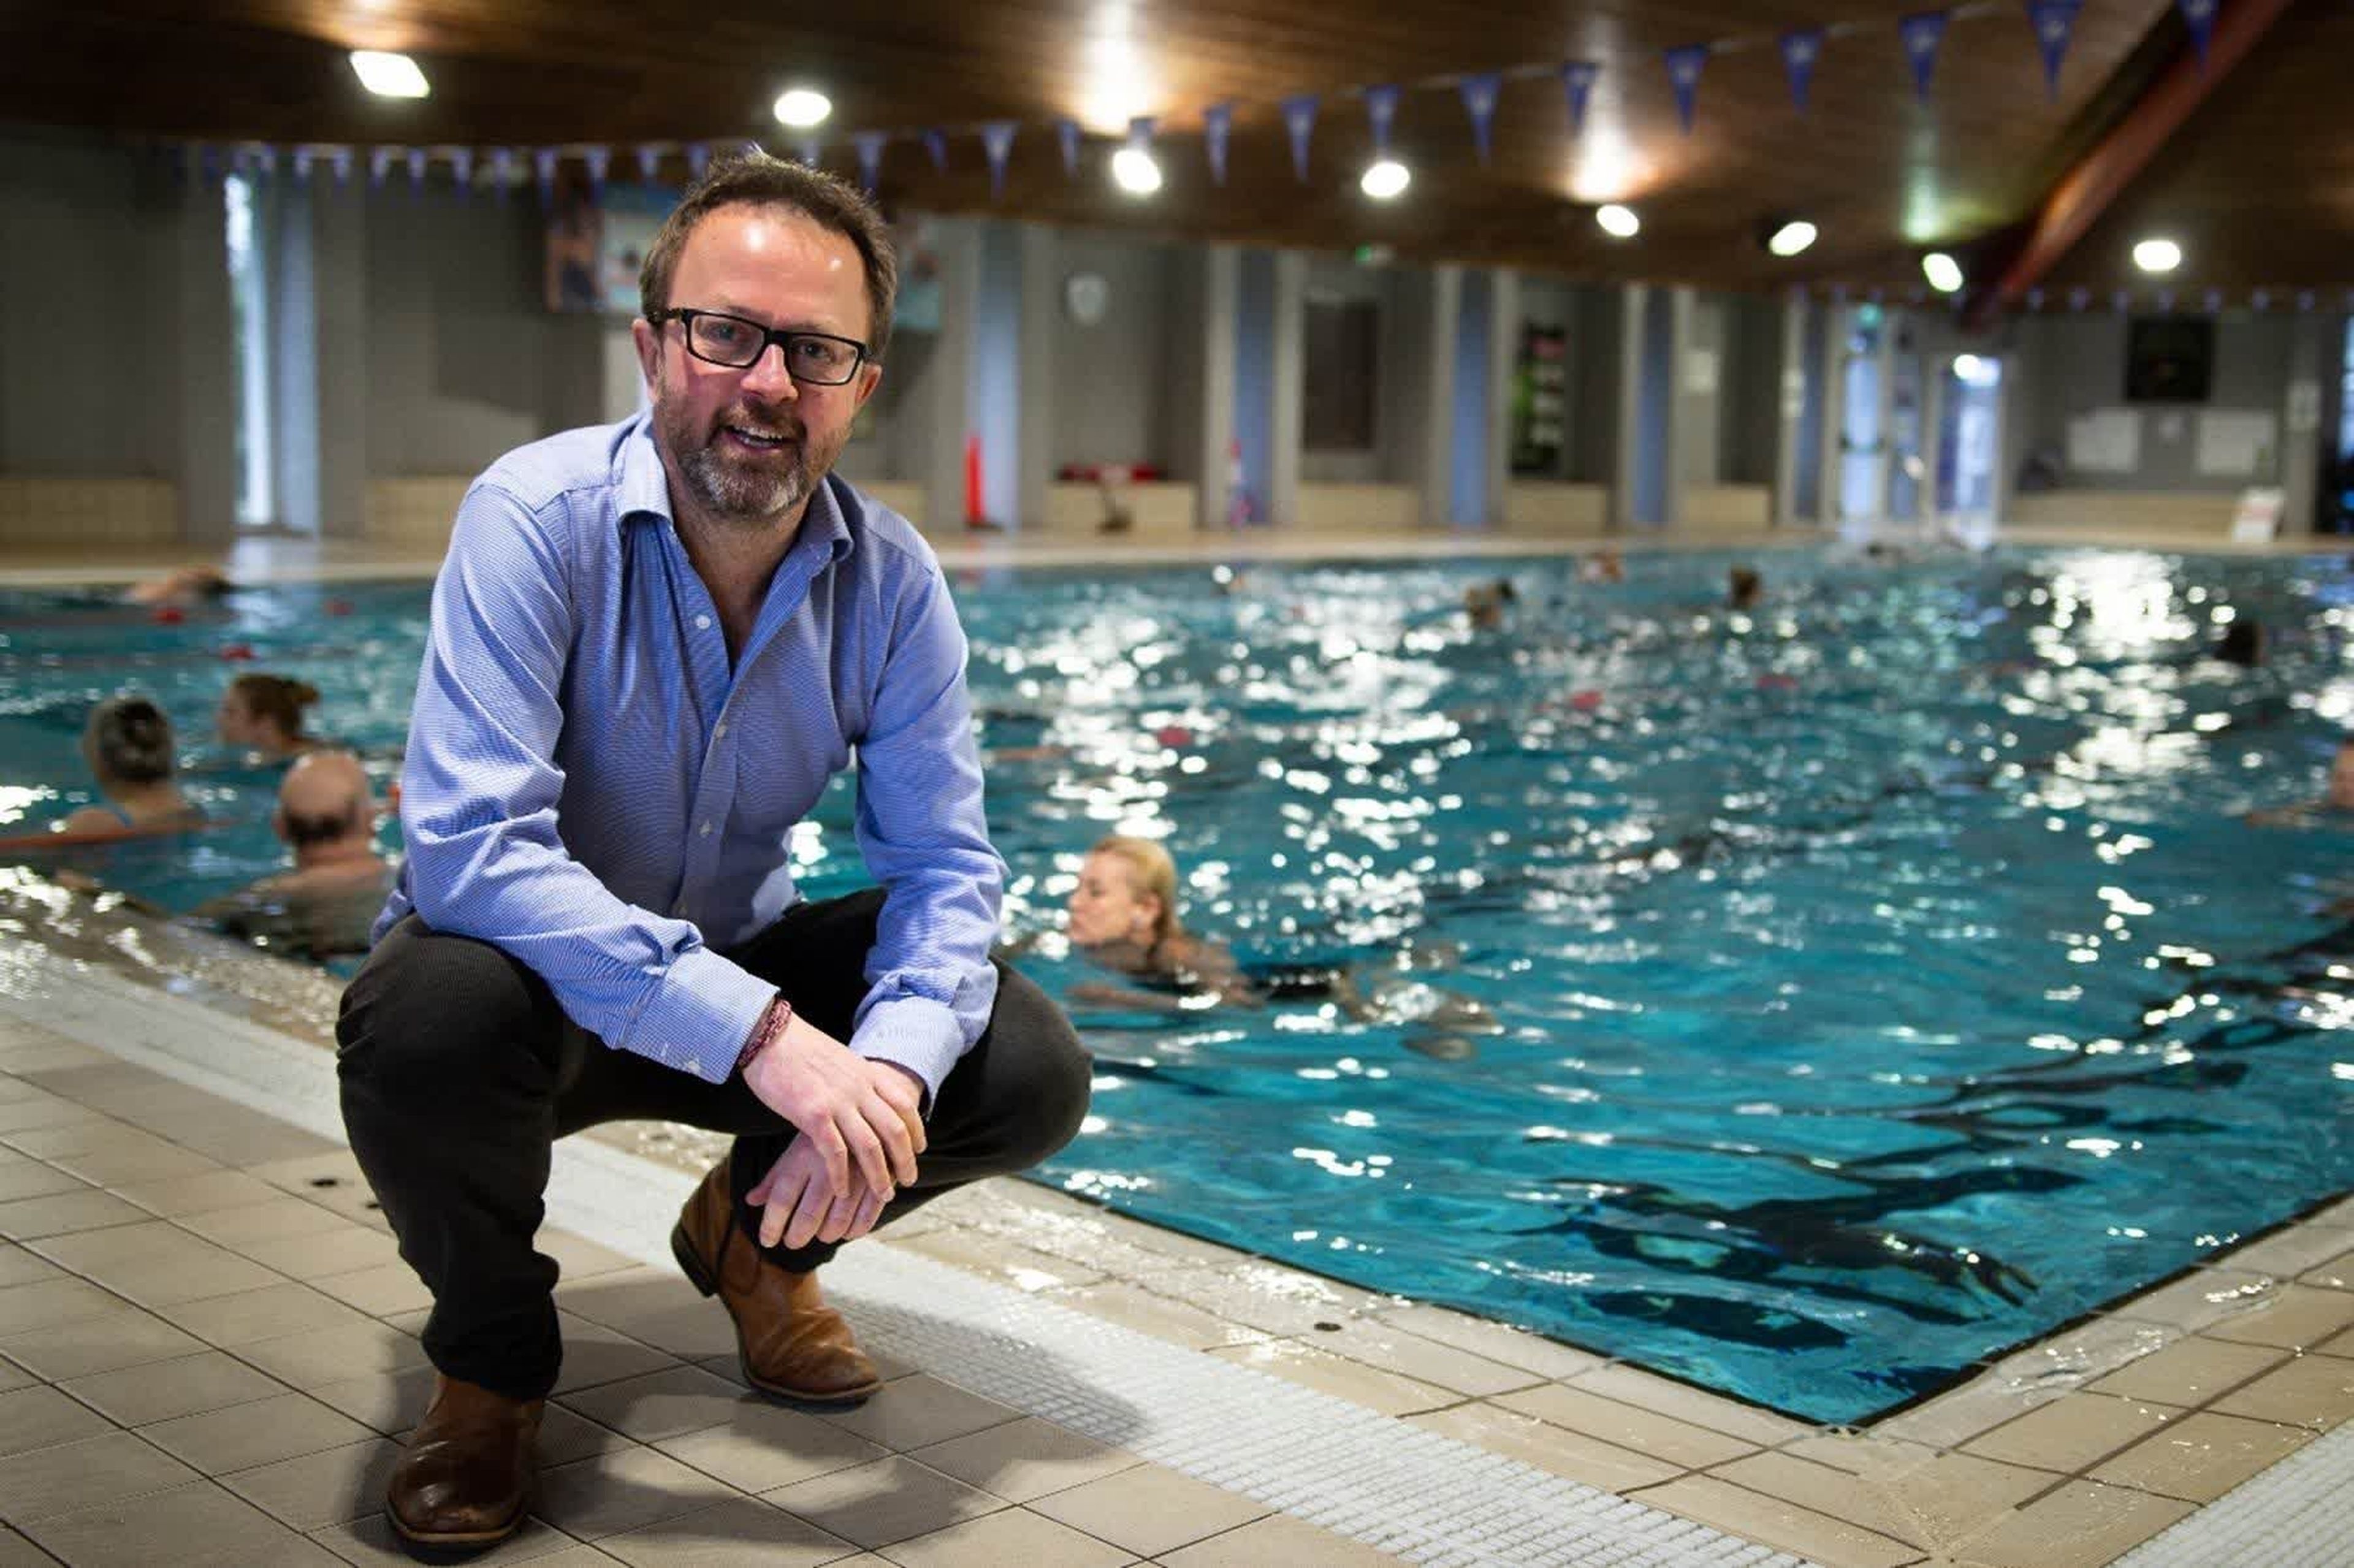 Un centro de datos usa el calor sobrante para calentar una piscina pública, ahorrando 24.000 dólares al año al ayuntamiento